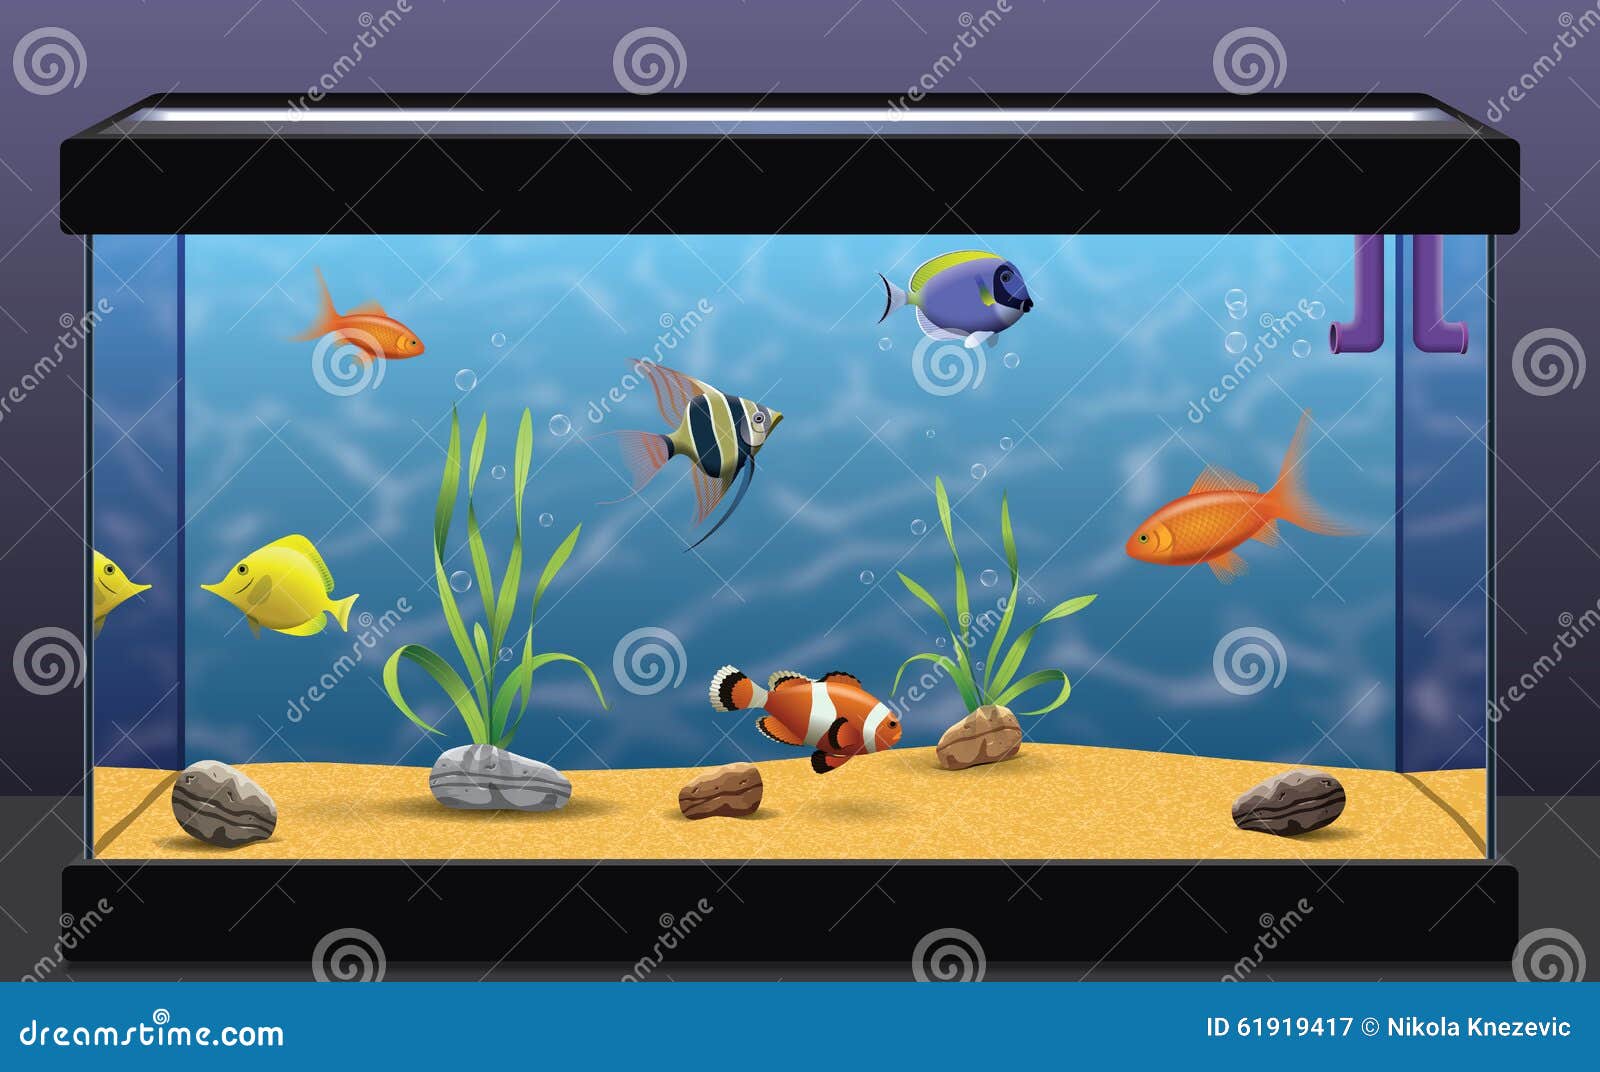 В 10 аквариумах было поровну рыбок. Аквариум с рыбками для детей. Прямоугольный аквариум с рыбками. Аквариум для детей прямоугольный. Аквариум без рыбок.